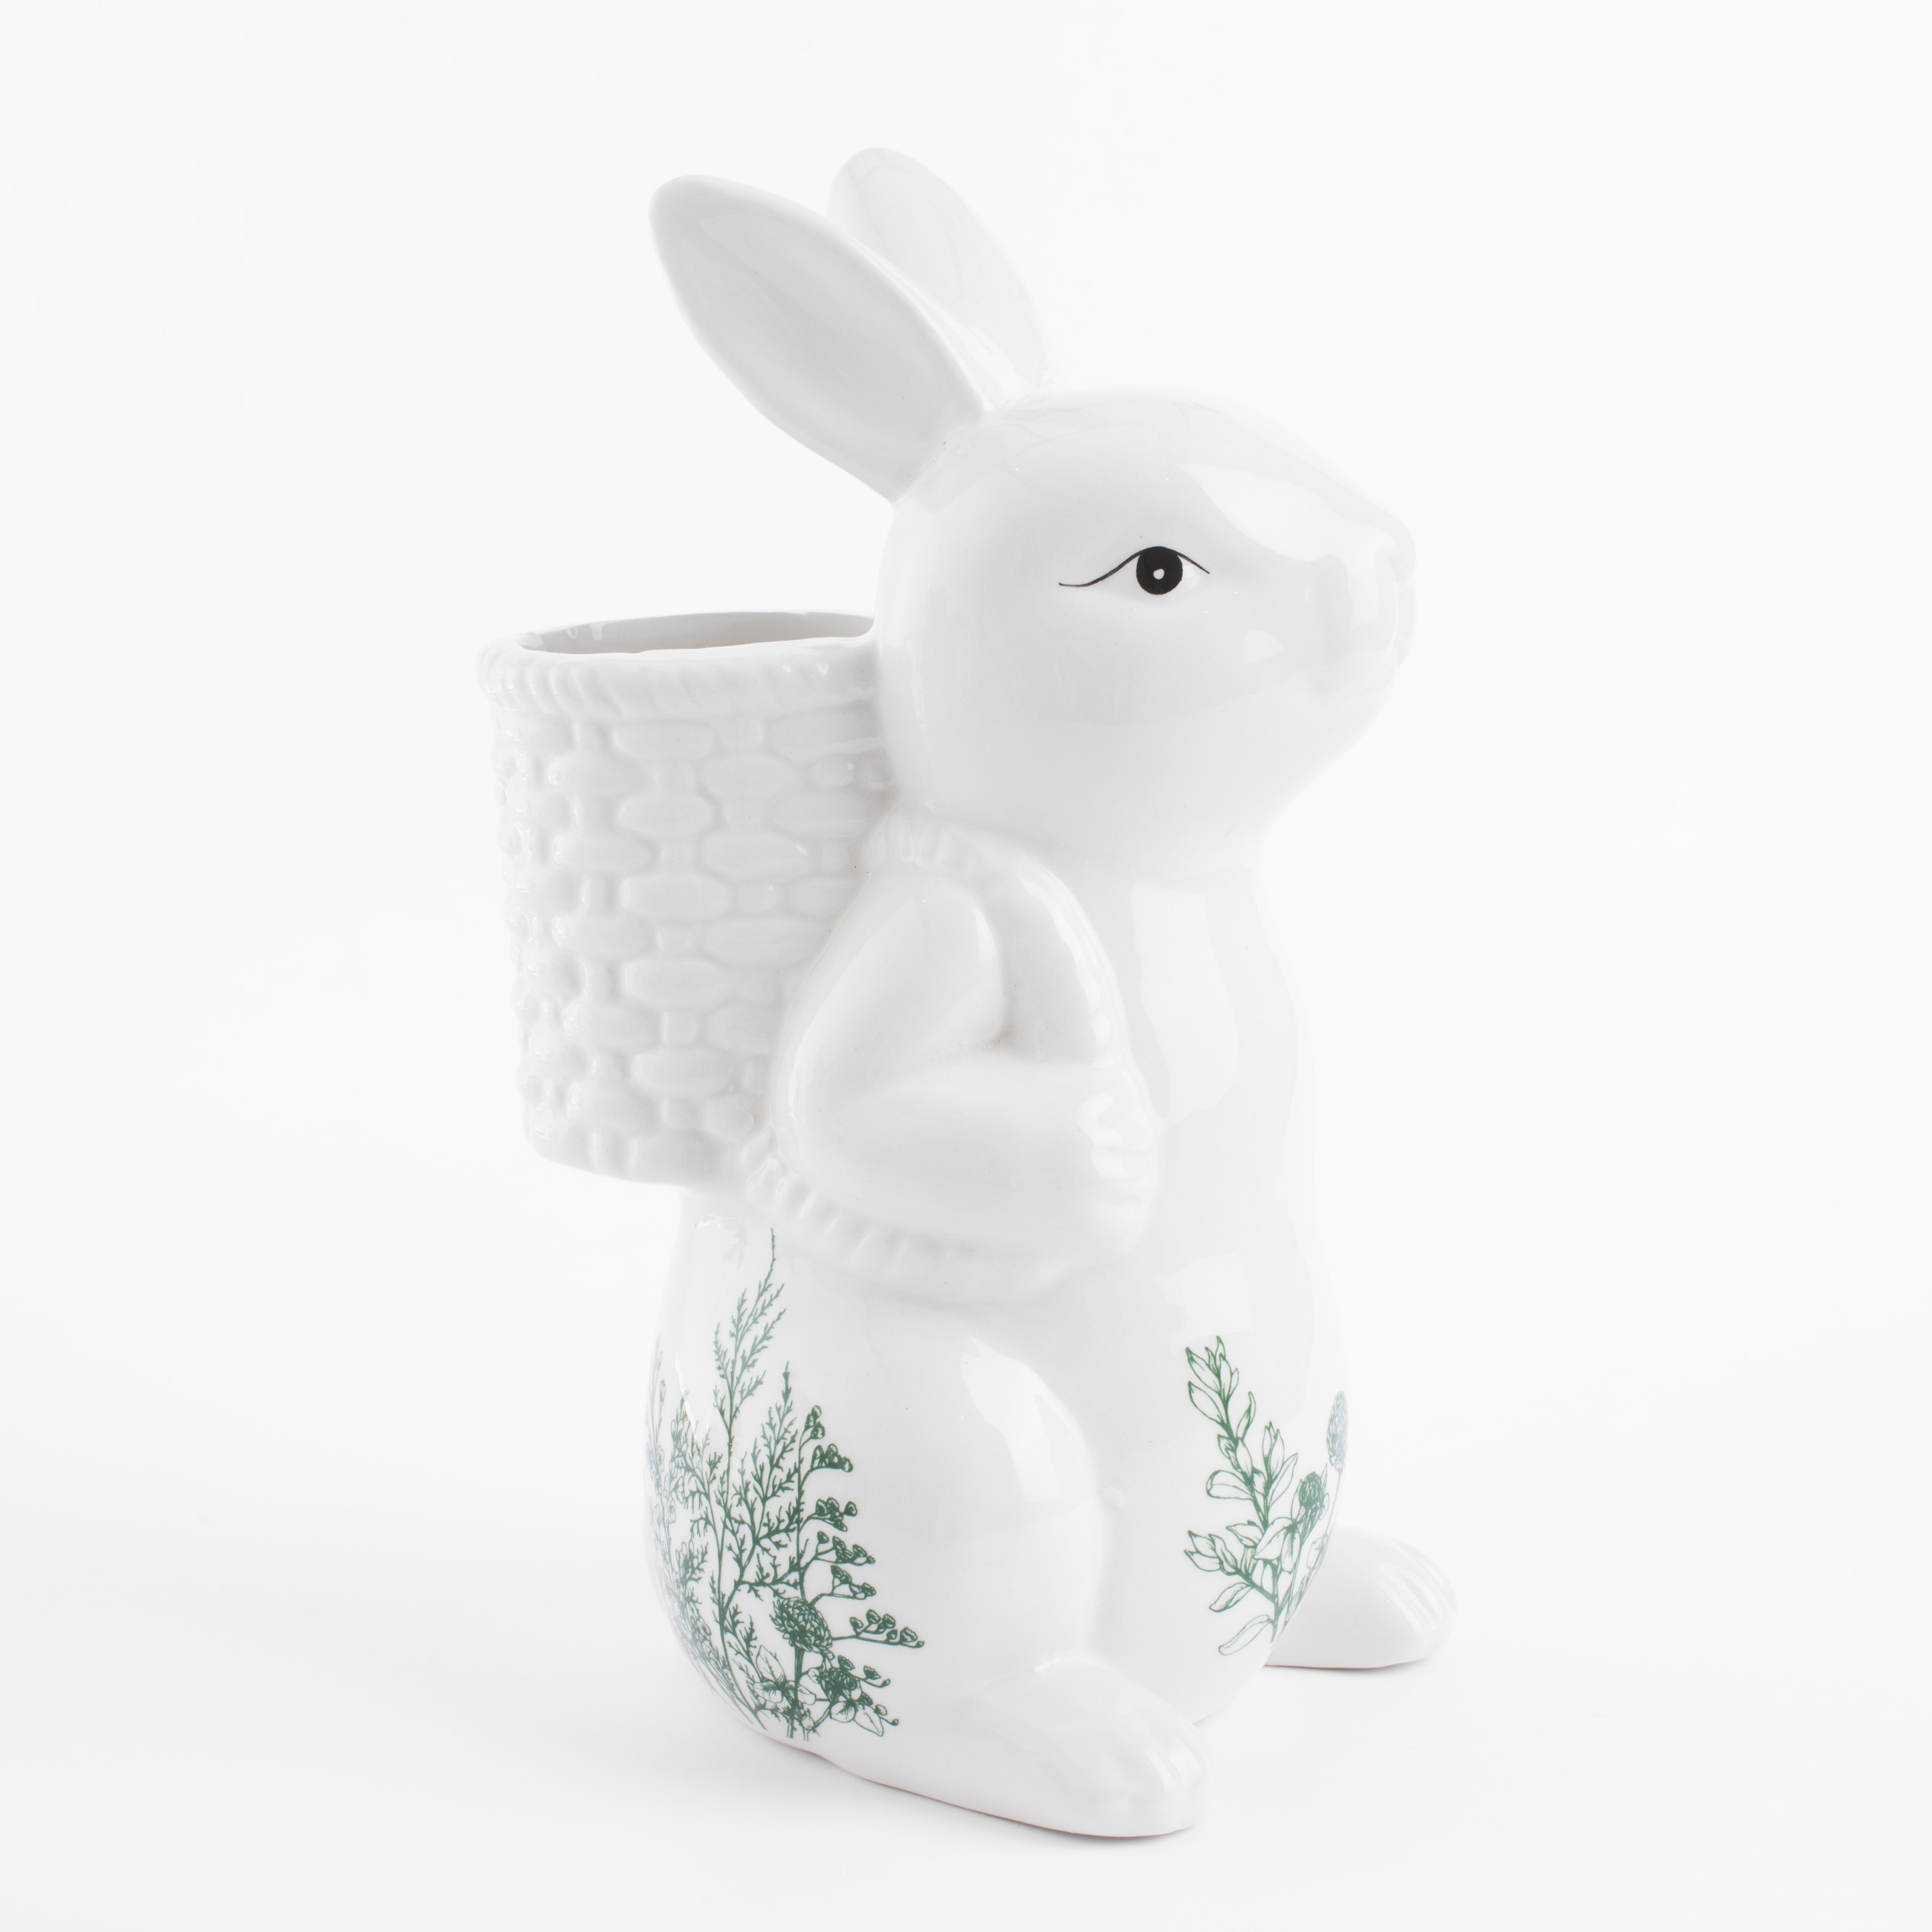 Ваза для цветов, 22 см, декоративная, керамика, бело-зеленая, Кролик с корзиной, Easter blooming изображение № 3